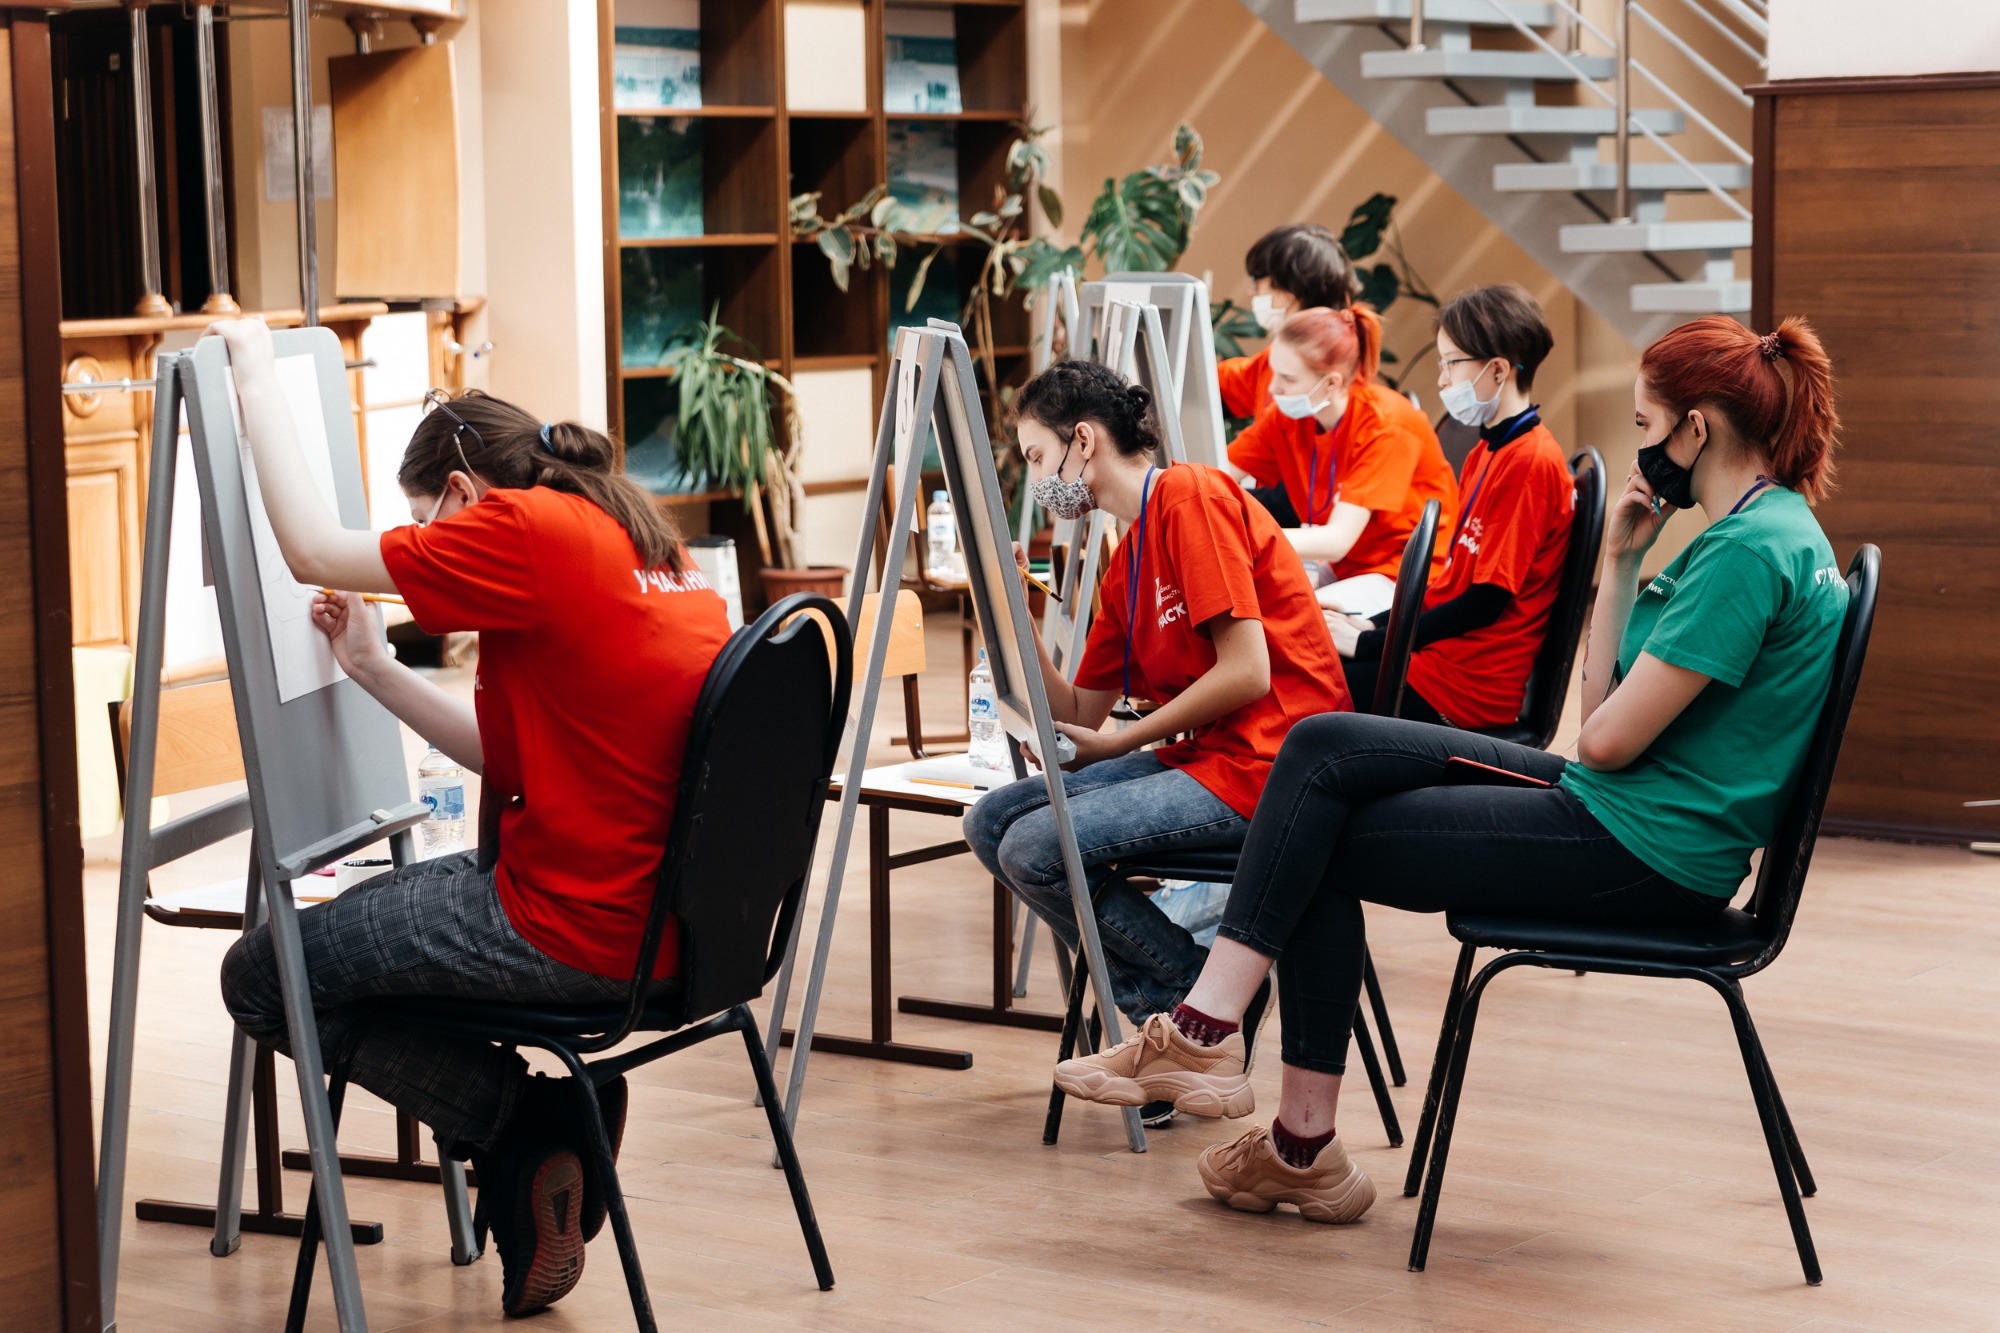 Вместо самозанятых – индустрия: как креативной молодежи найти работу в Томске?